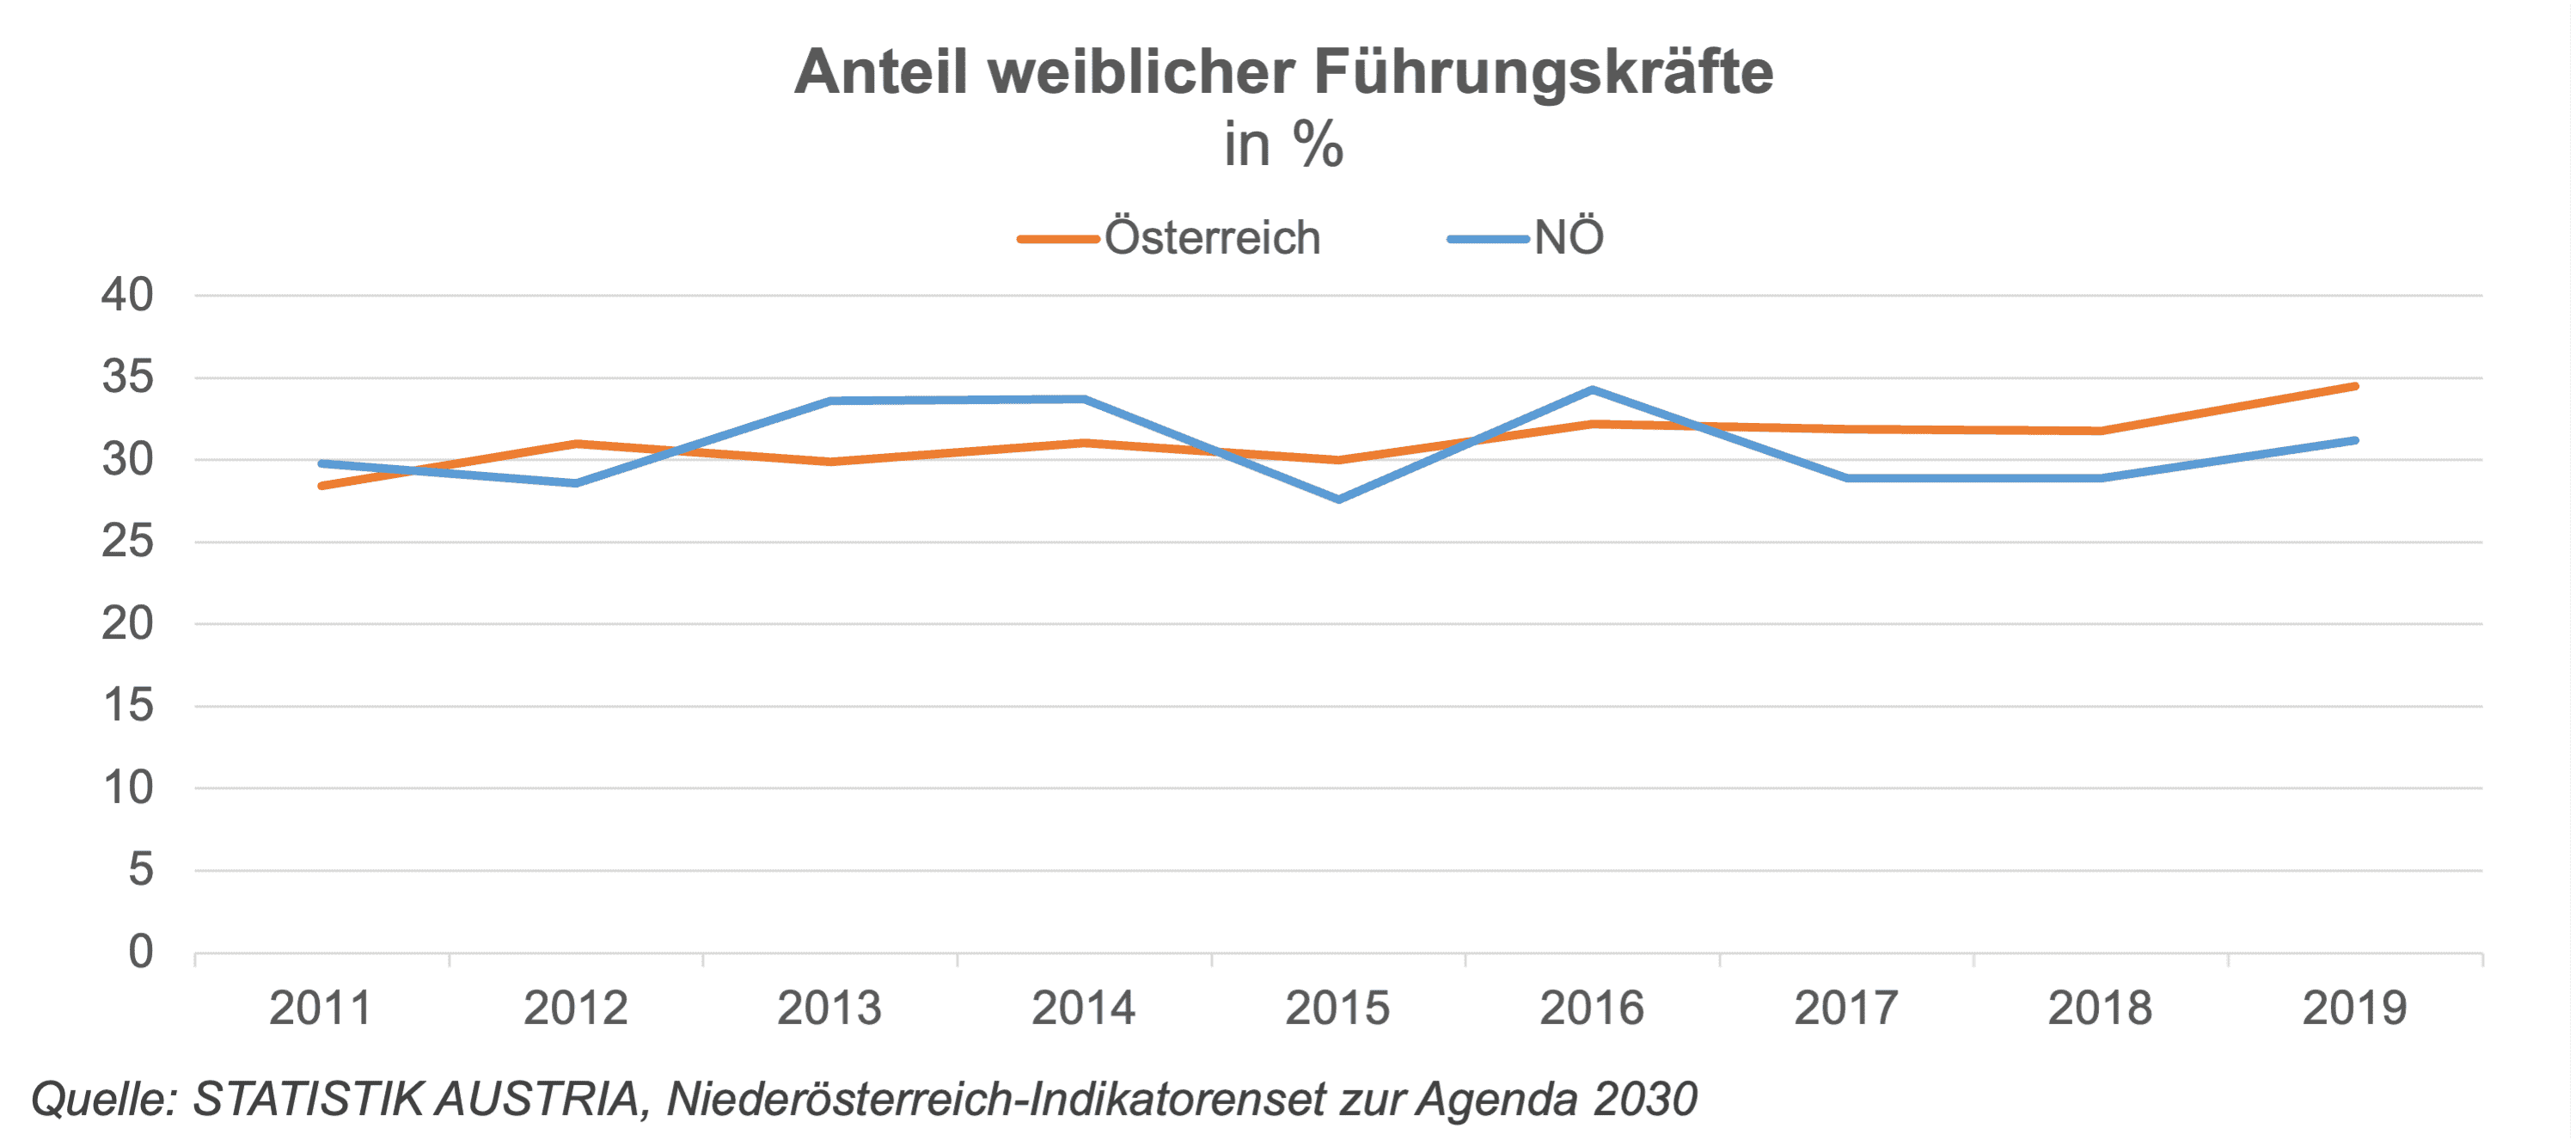 Erfreulich sind hohe Werte von NÖ beim Anteil weiblicher Führungskräfte im Land Niederösterreich und der höchste Anteil von Bürgermeisterinnen in Österreich. Landesweit liegen die Werte im Durschnitt und sind verbesserungswürdig.